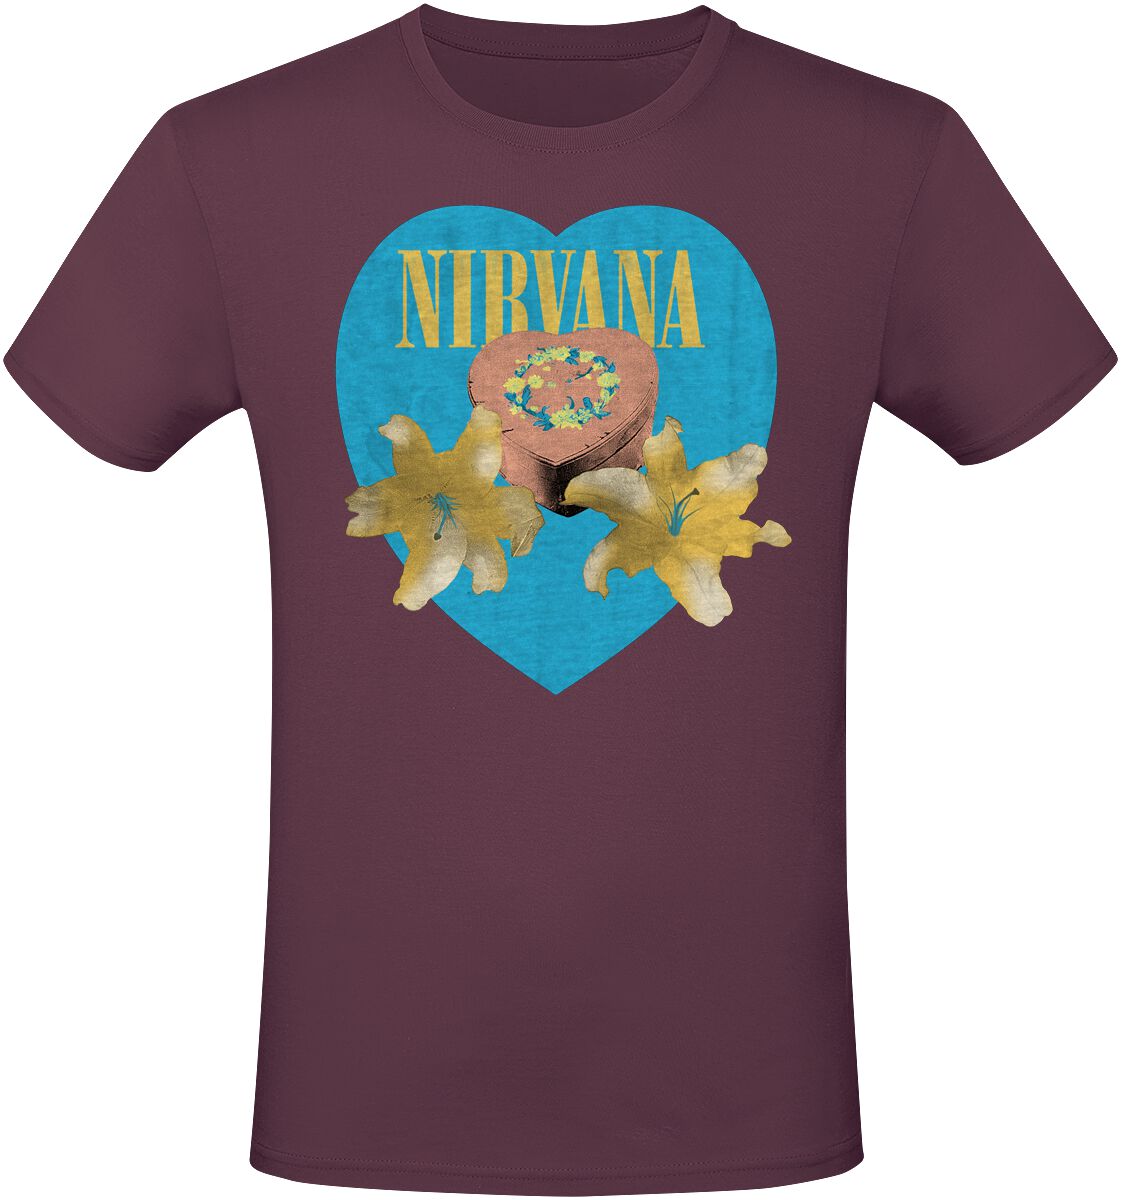 Nirvana T-Shirt - Flower Heart - S bis 3XL - für Männer - Größe 3XL - rot  - Lizenziertes Merchandise!